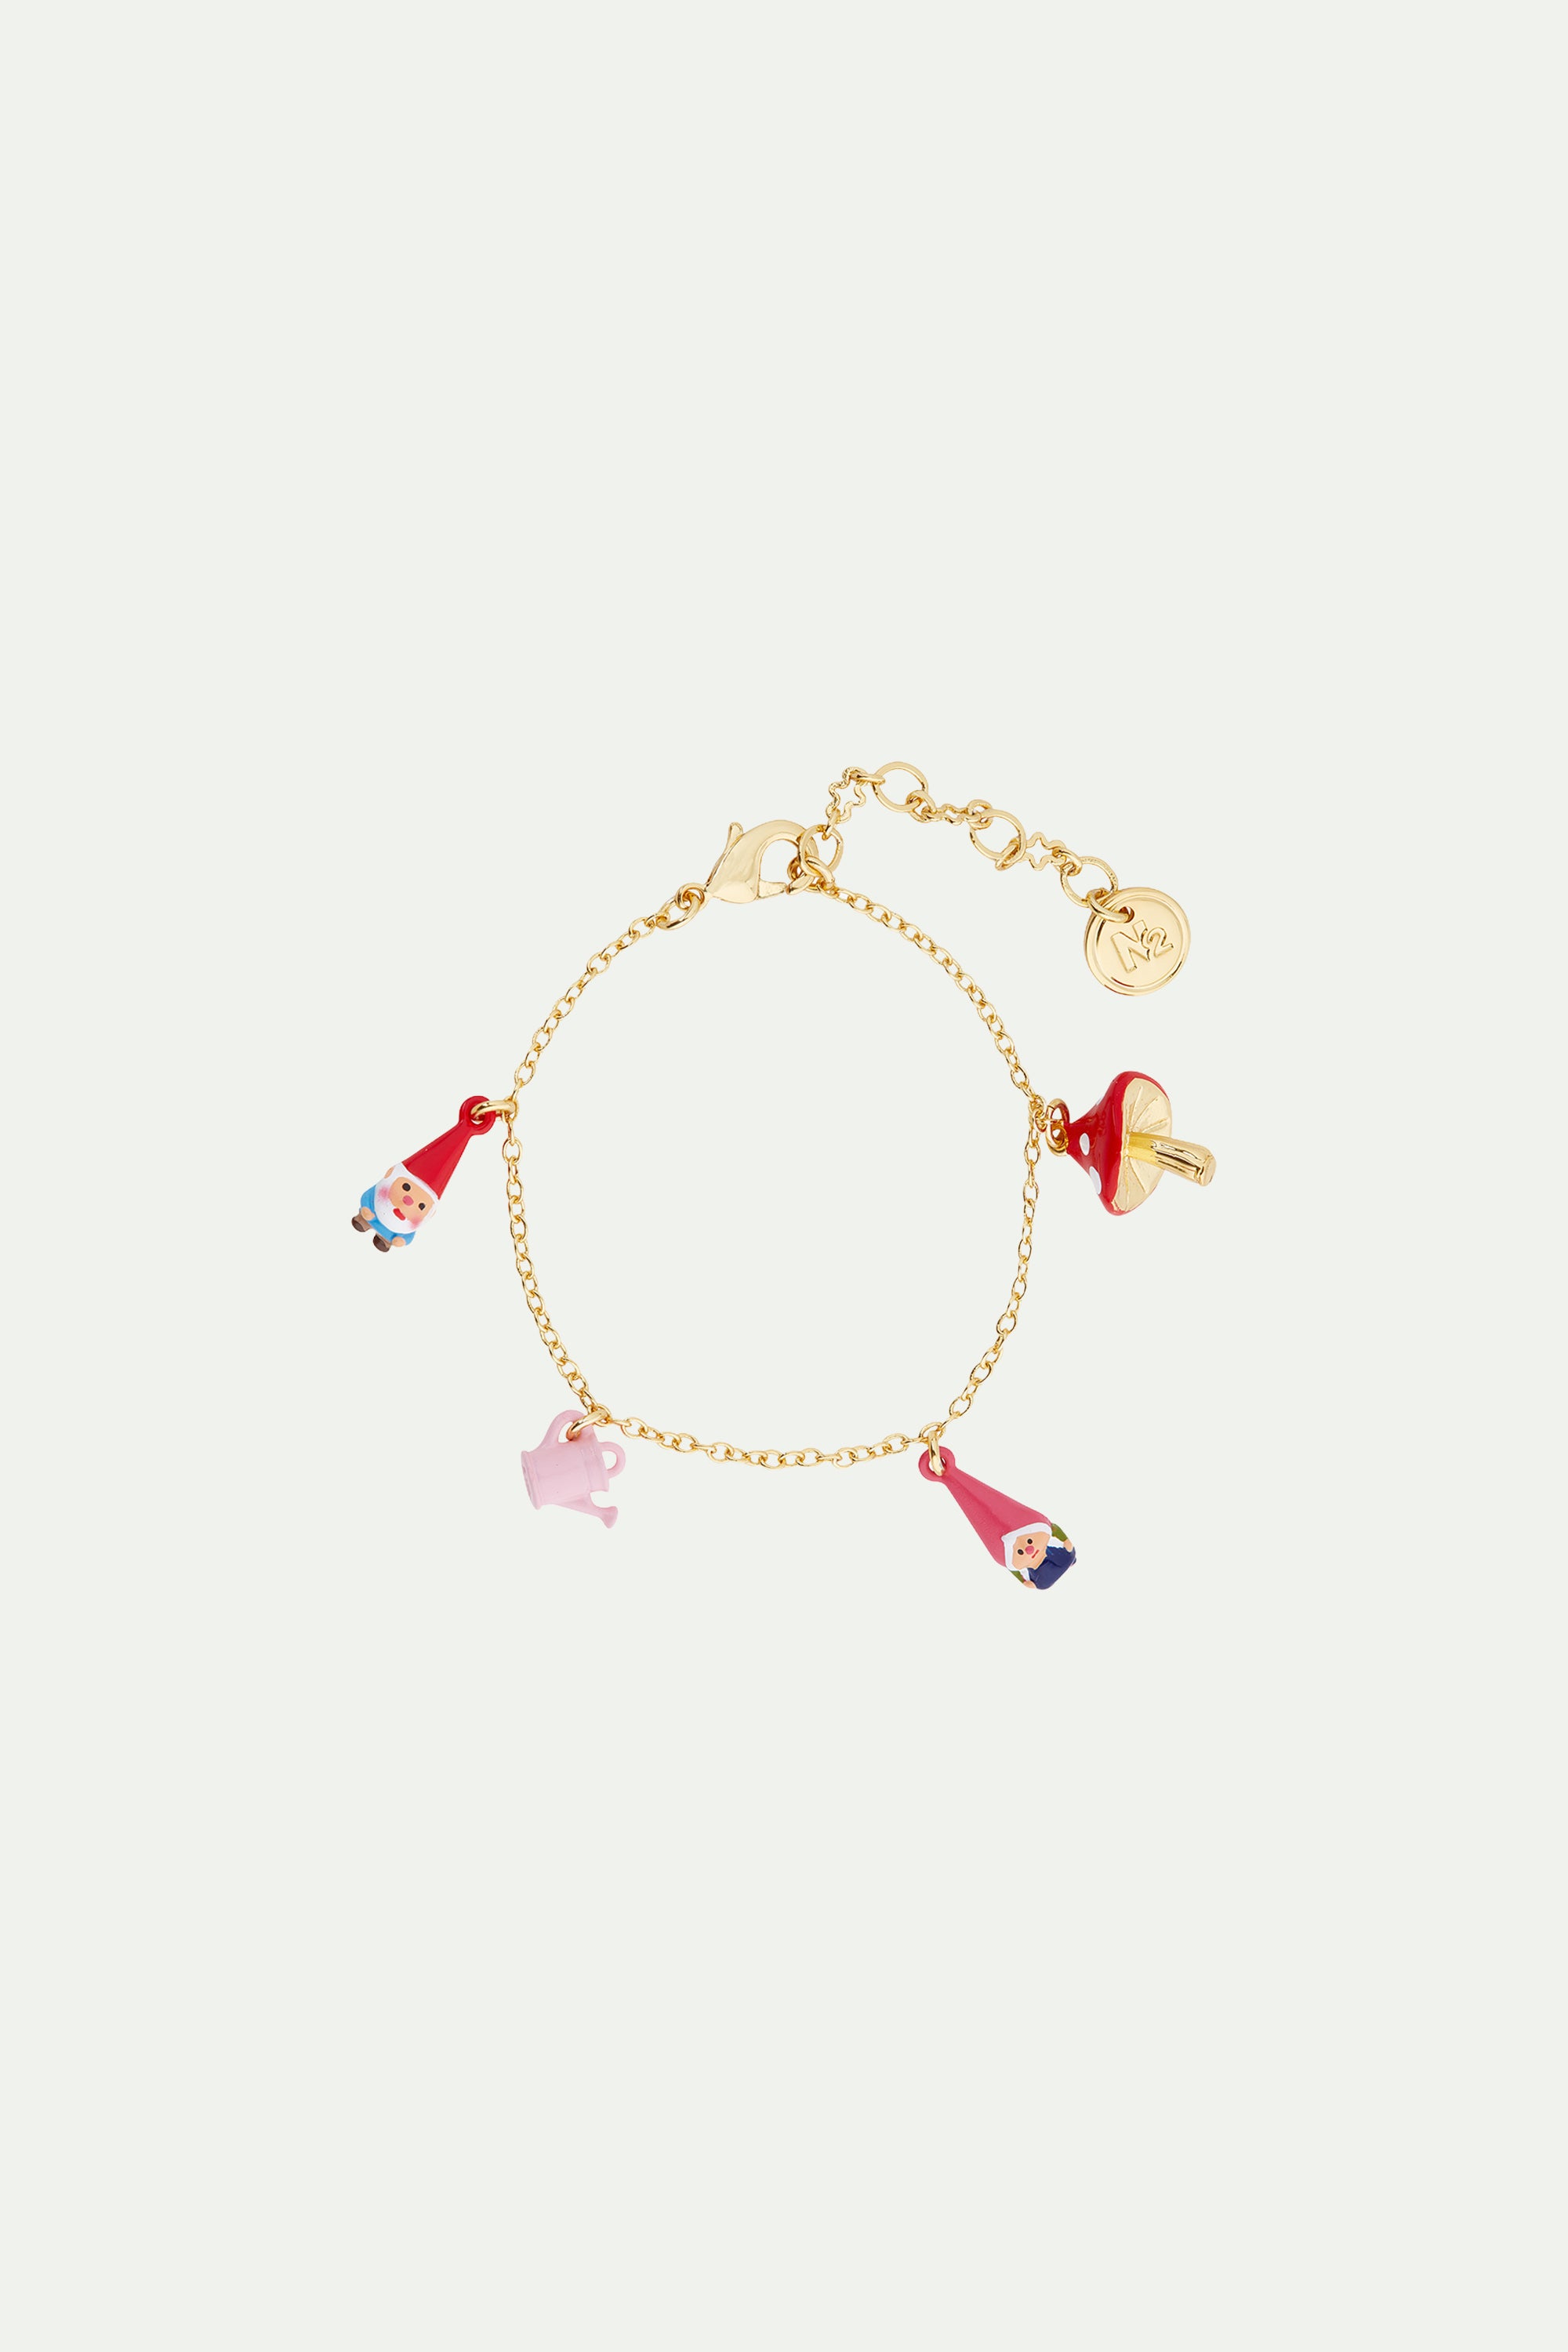 Mushroom and garden gnome charm bracelet